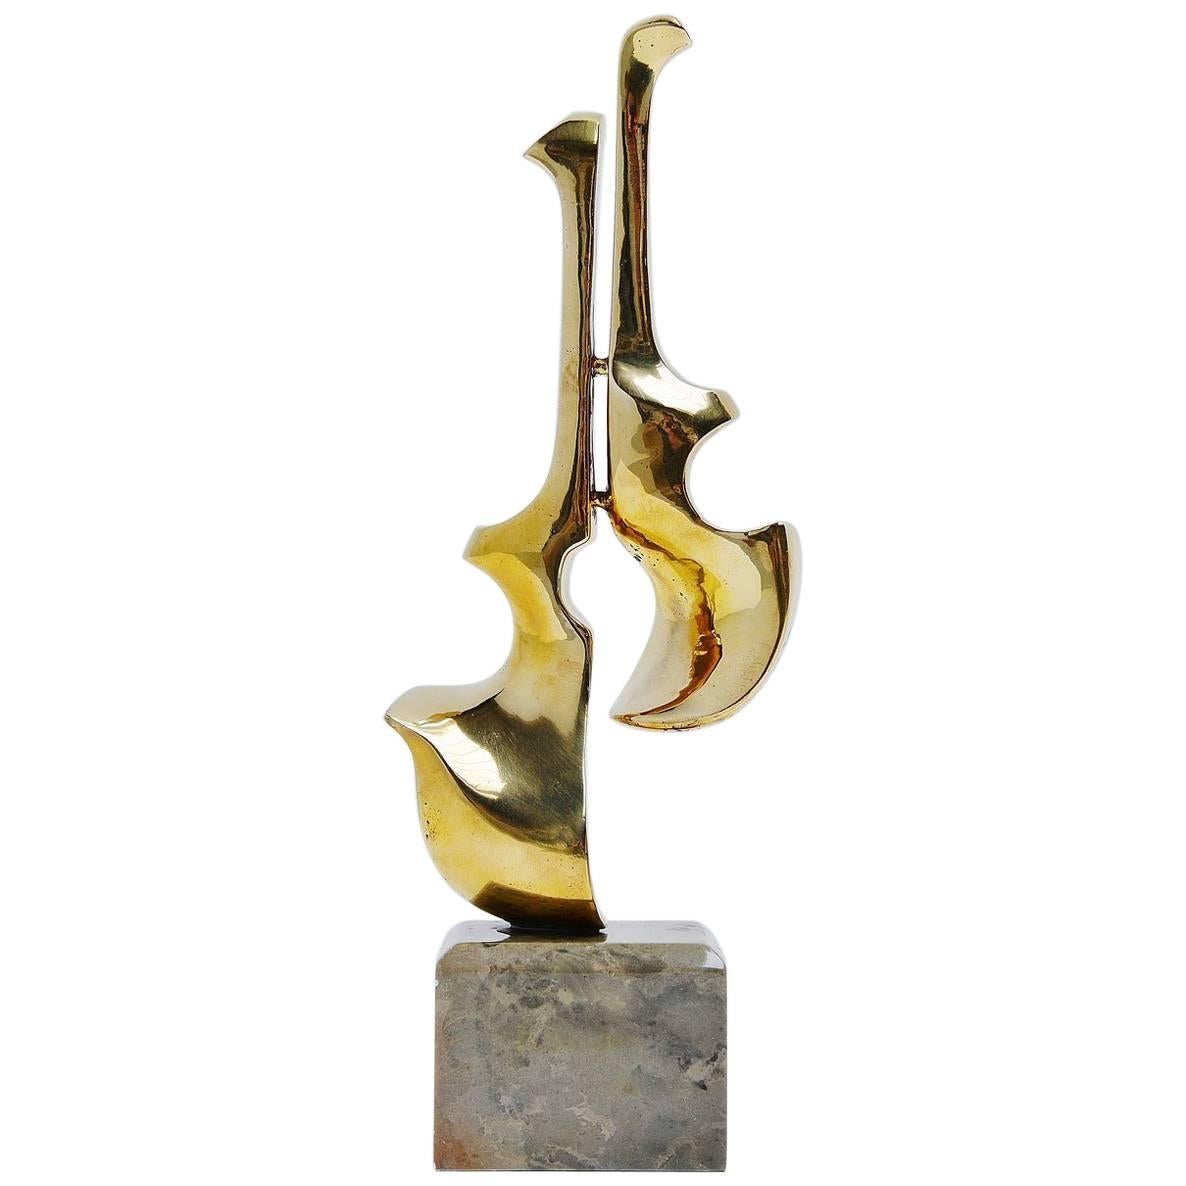 Hattakitkosol Somchai Bronze Guitar / Violin Sculpture, 1970